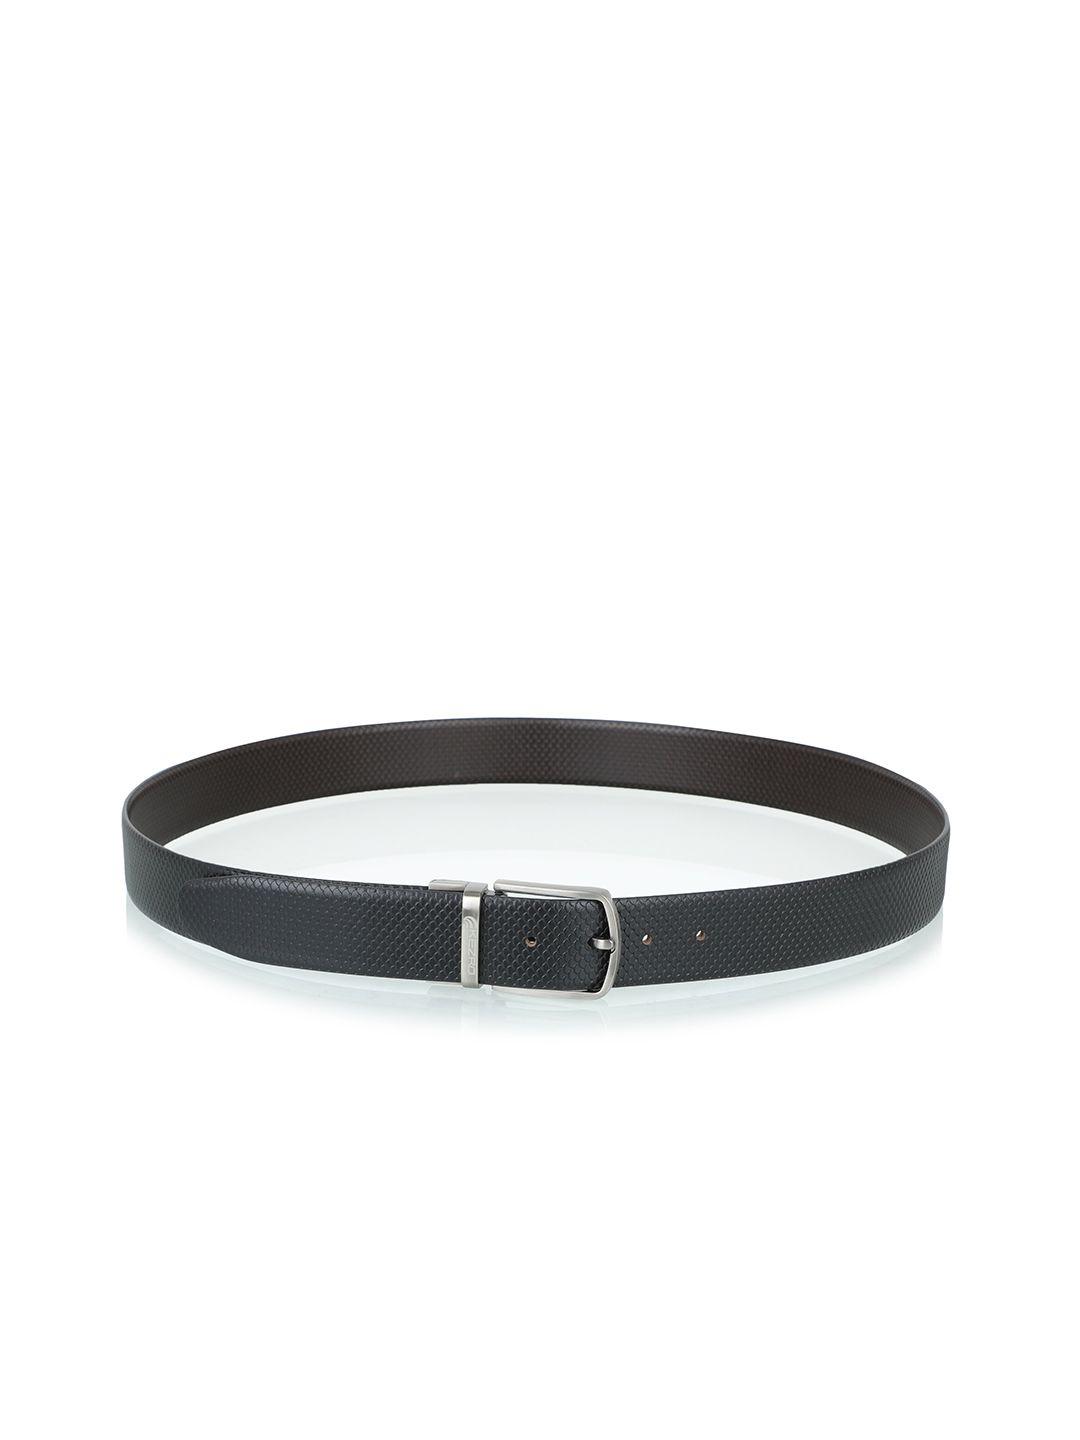 kezro-men-black-textured-leather-formal-belt